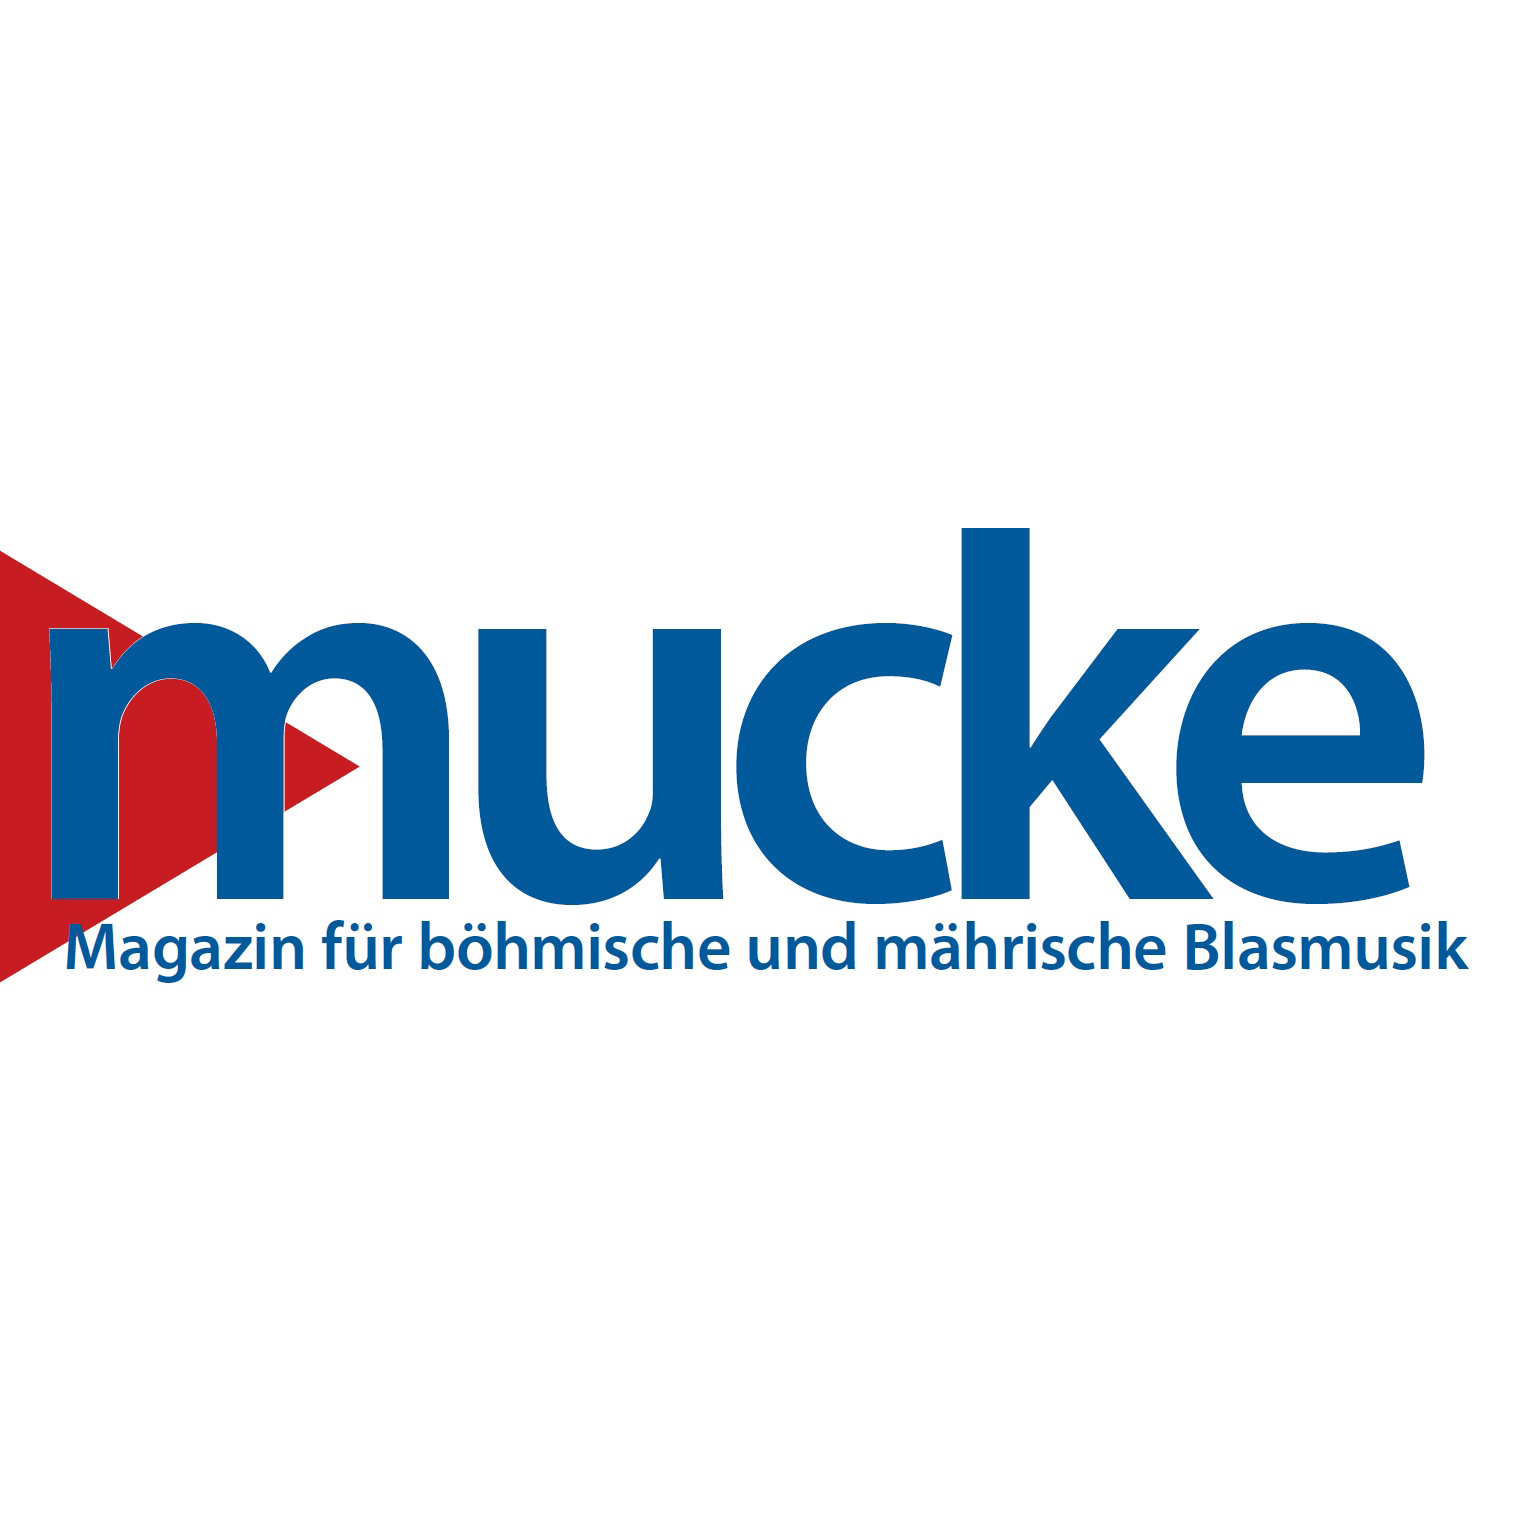 Mucke - Magazin für böhmische und mährische Blasmusik